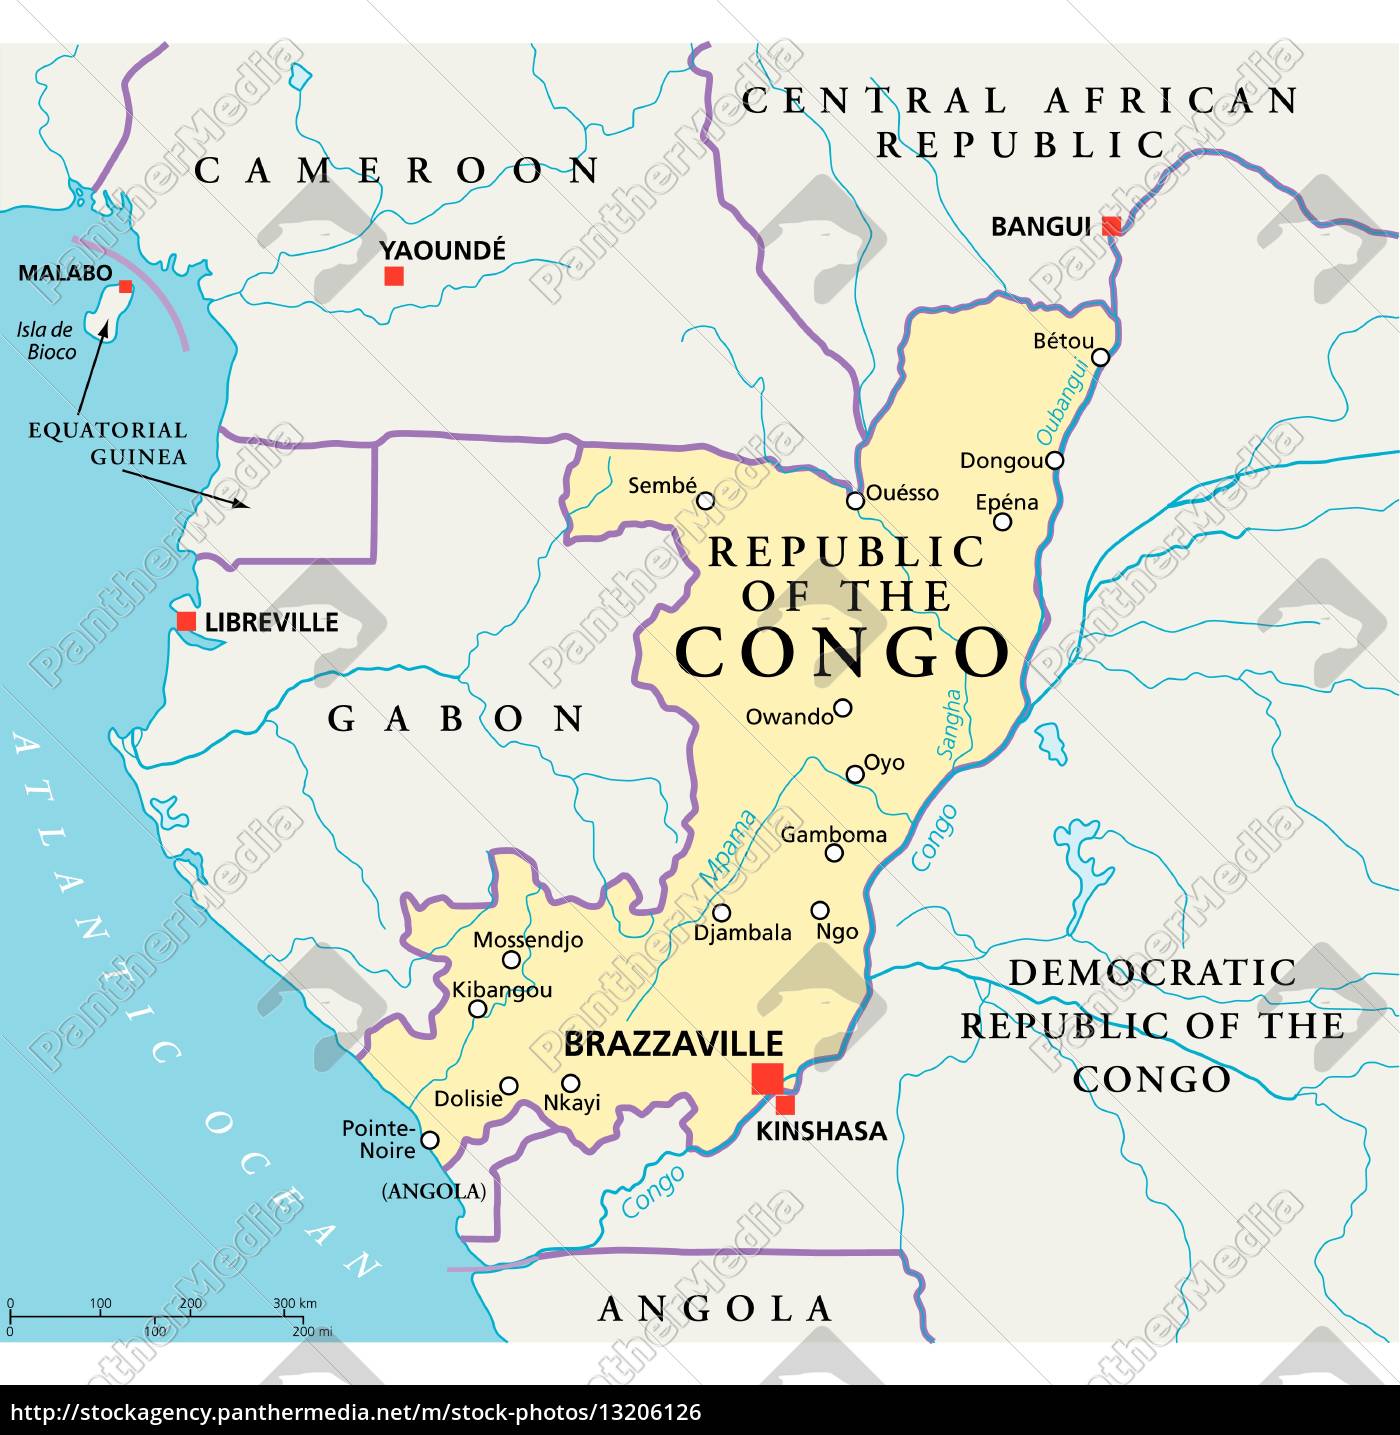 republik kongo politische karte - Stockfoto - #13206126 | Bildagentur